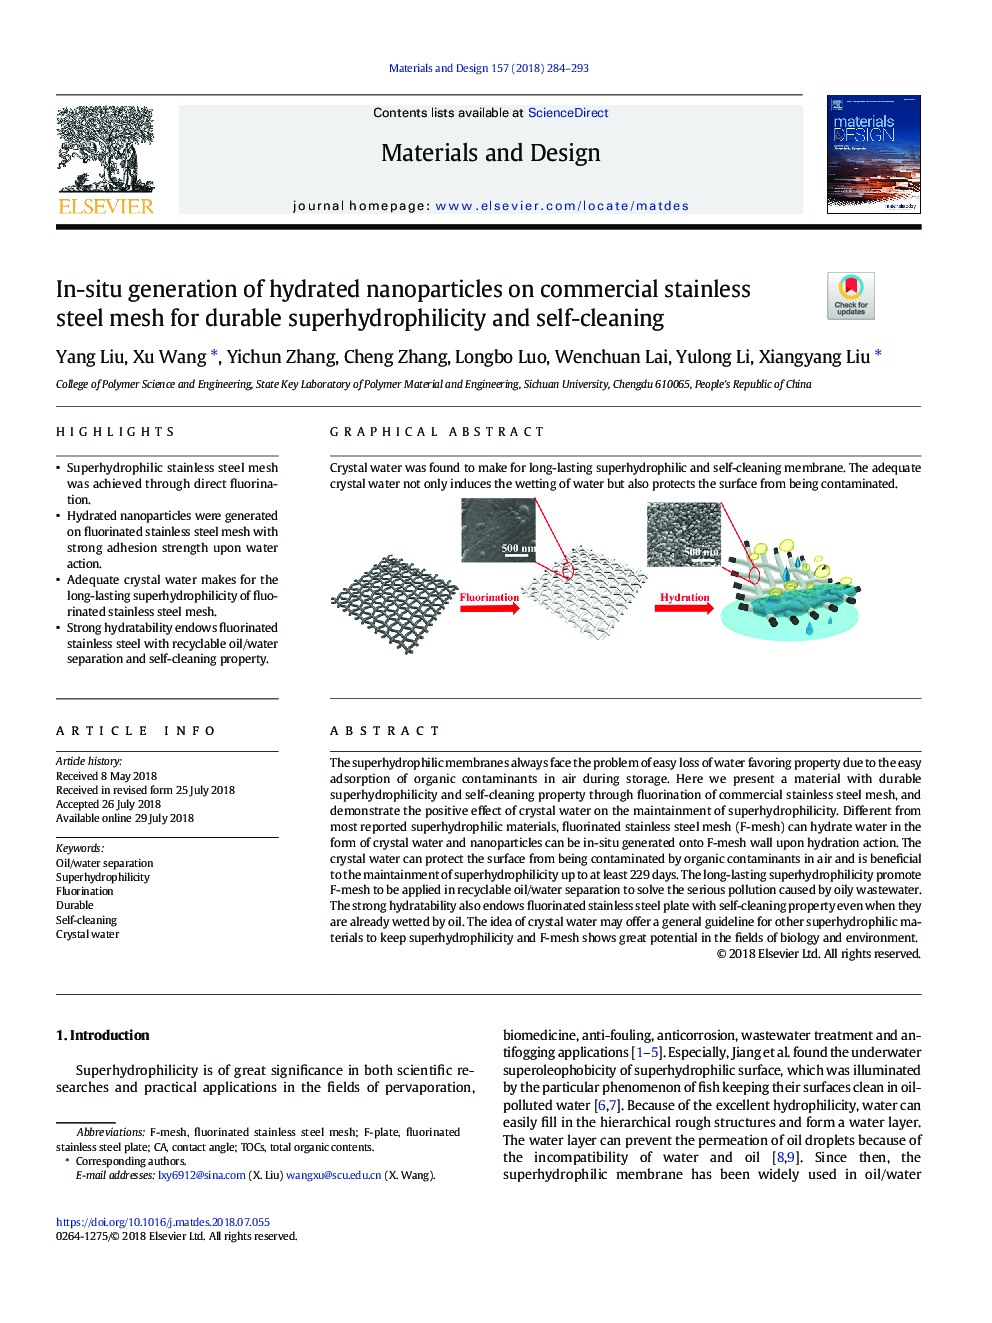 تولید انبوه نانوذرات هیدراته در سازه های تجاری ضدزنگ تجاری برای سوپر هیدروفیلیسم دوام و خود تمیزکاری 